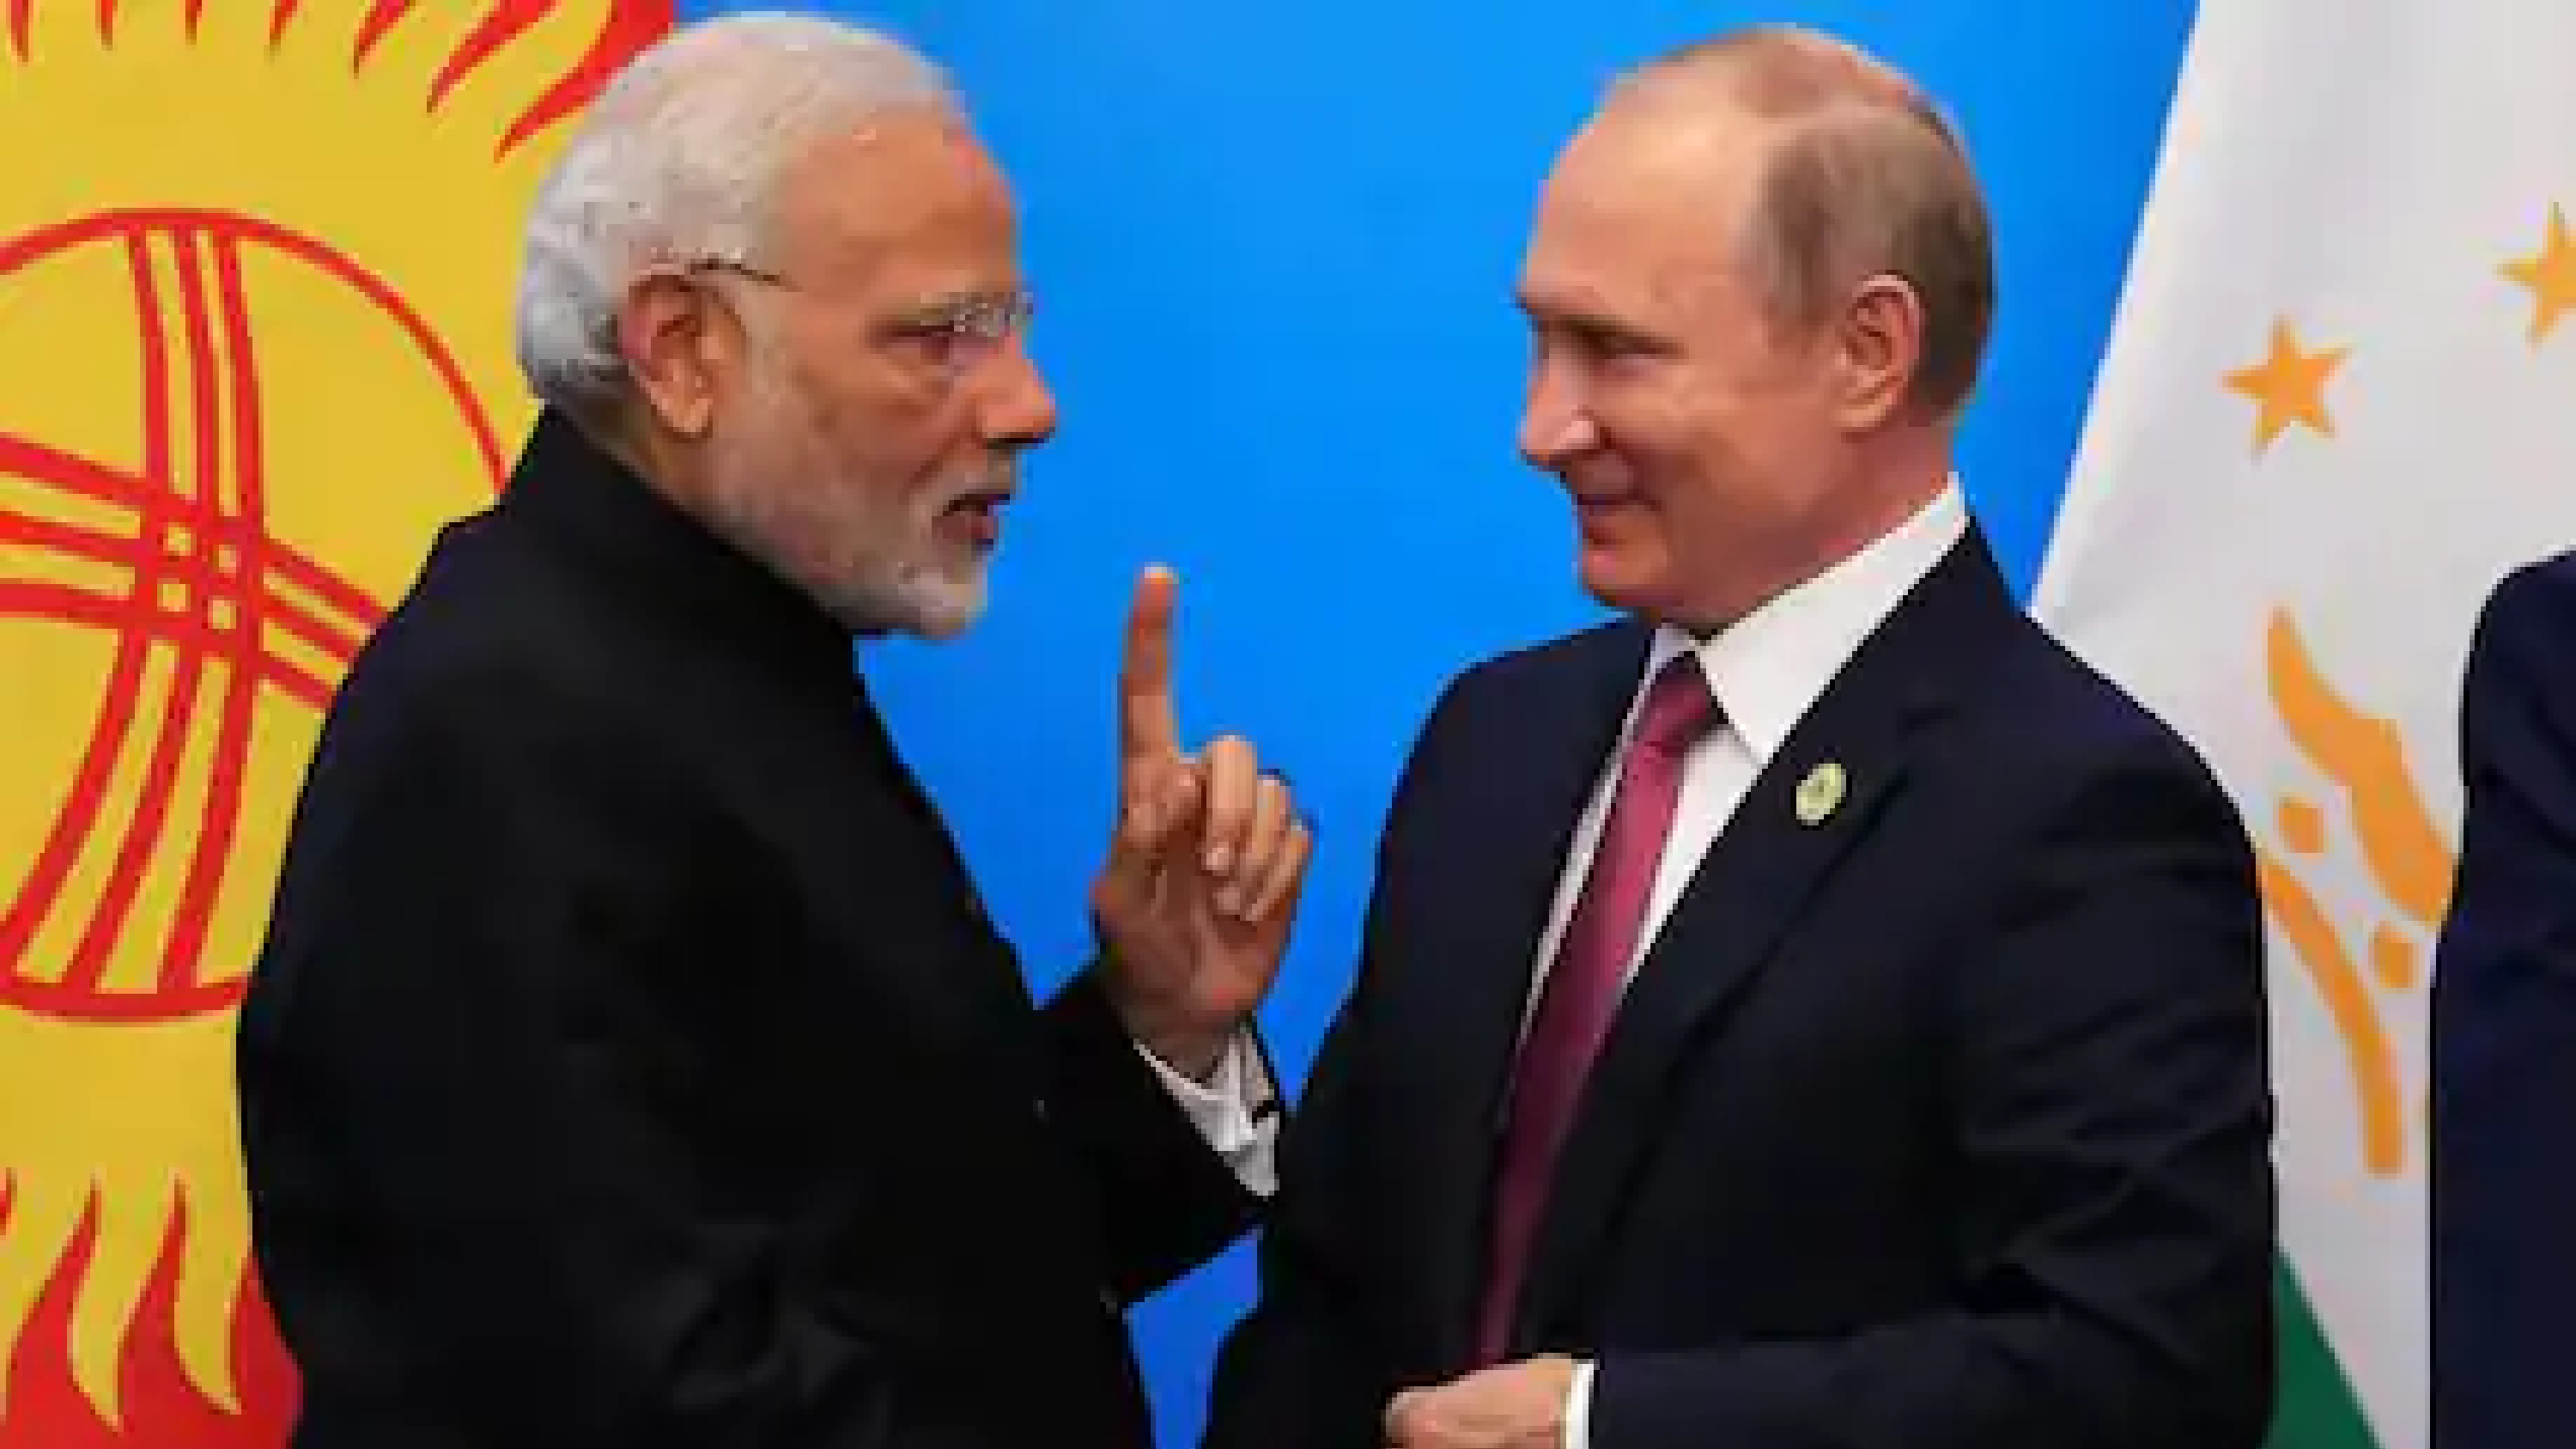 भारत-चीन मुद्दे पर बोले पुतिन- दोनों देश विवाद सुलझाने में सक्षम, तीसरे की जरूरत नहीं